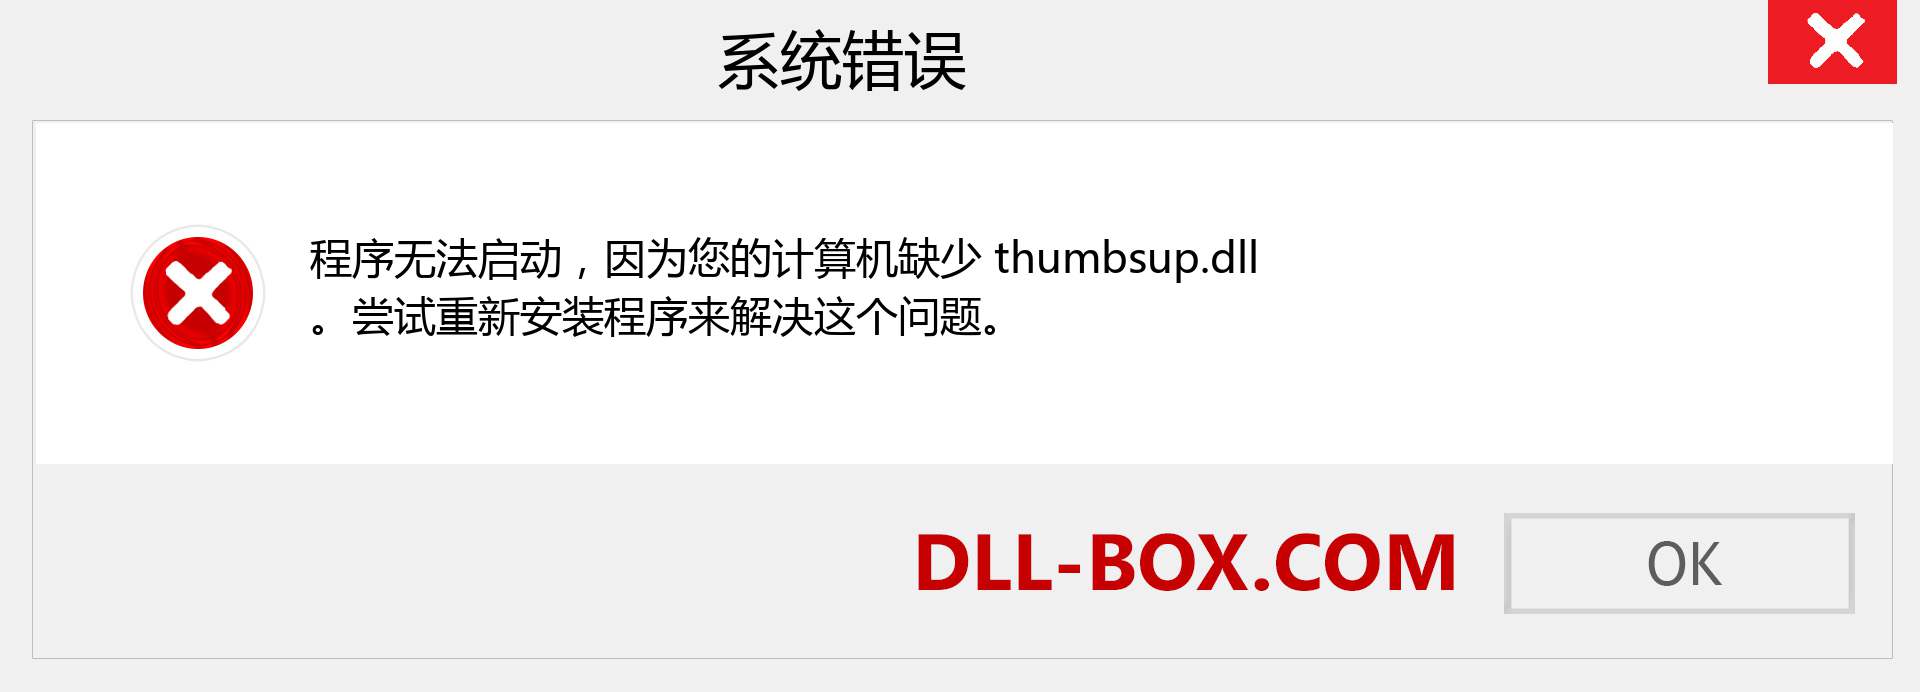 thumbsup.dll 文件丢失？。 适用于 Windows 7、8、10 的下载 - 修复 Windows、照片、图像上的 thumbsup dll 丢失错误